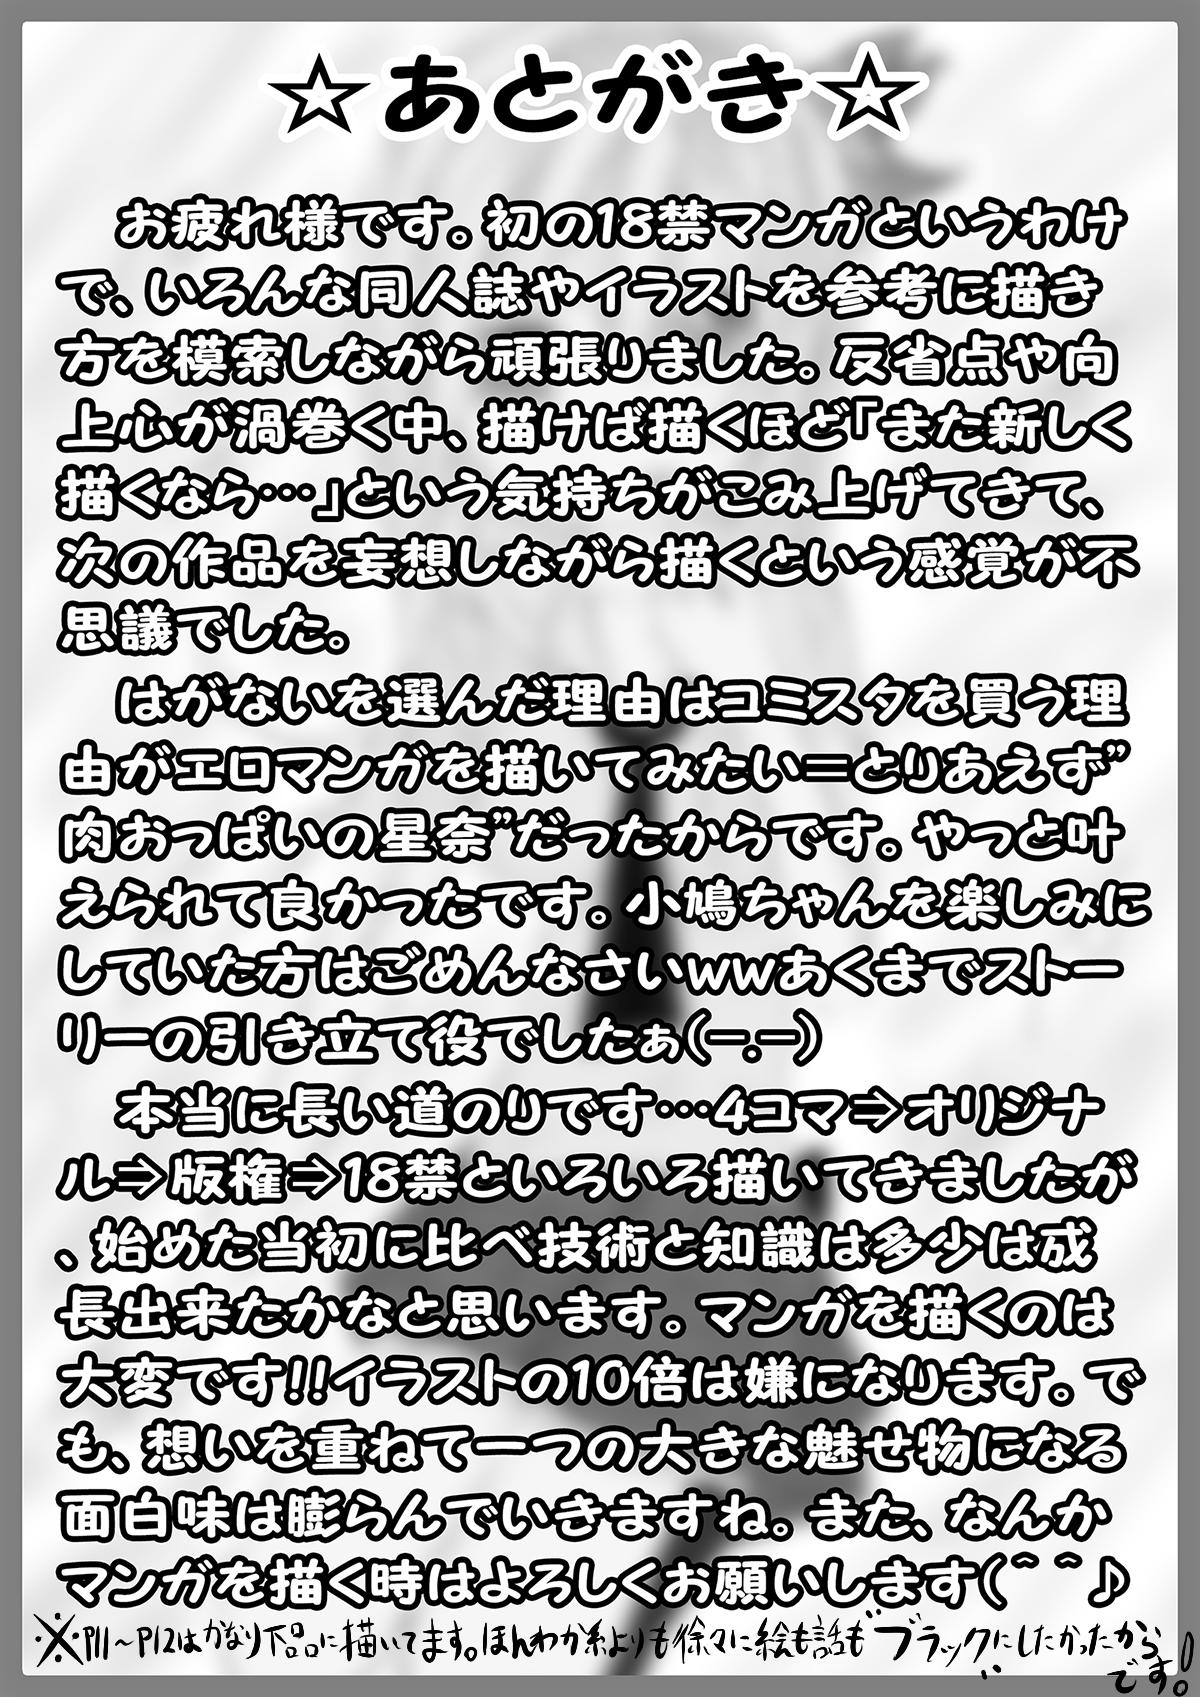 Branquinha 僕は××友達が少ない… - Boku wa tomodachi ga sukunai Goth - Page 14